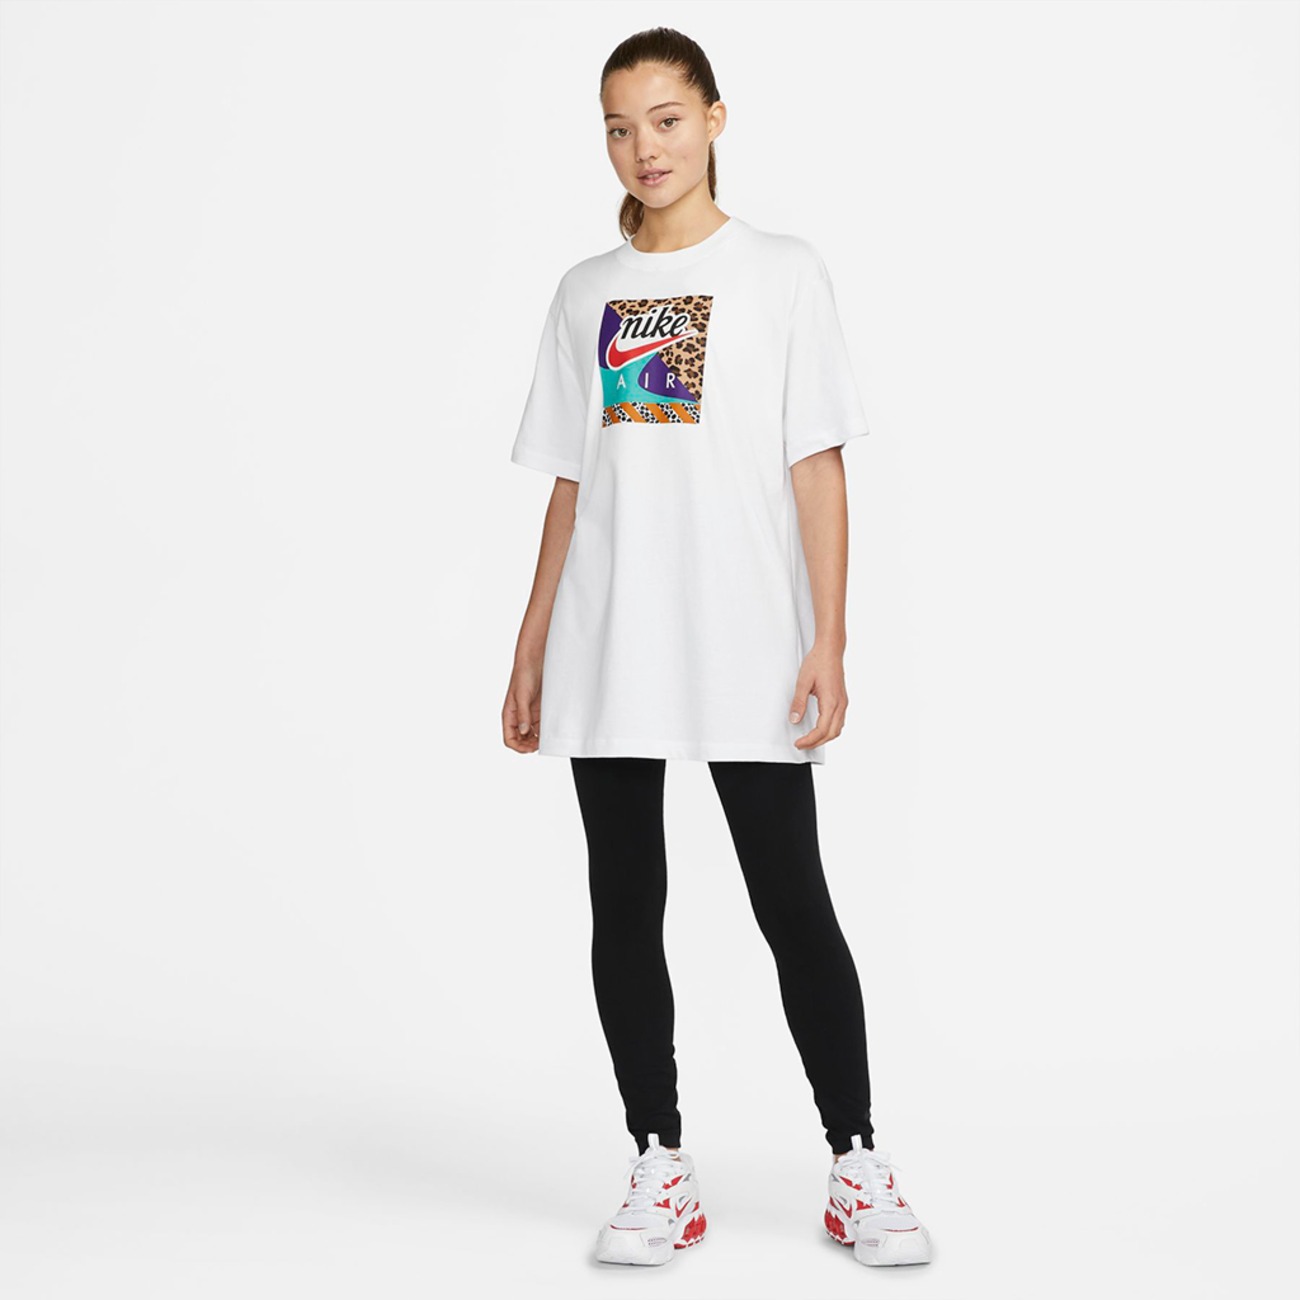 Camiseta Nike Sportswear Feminina - Foto 7